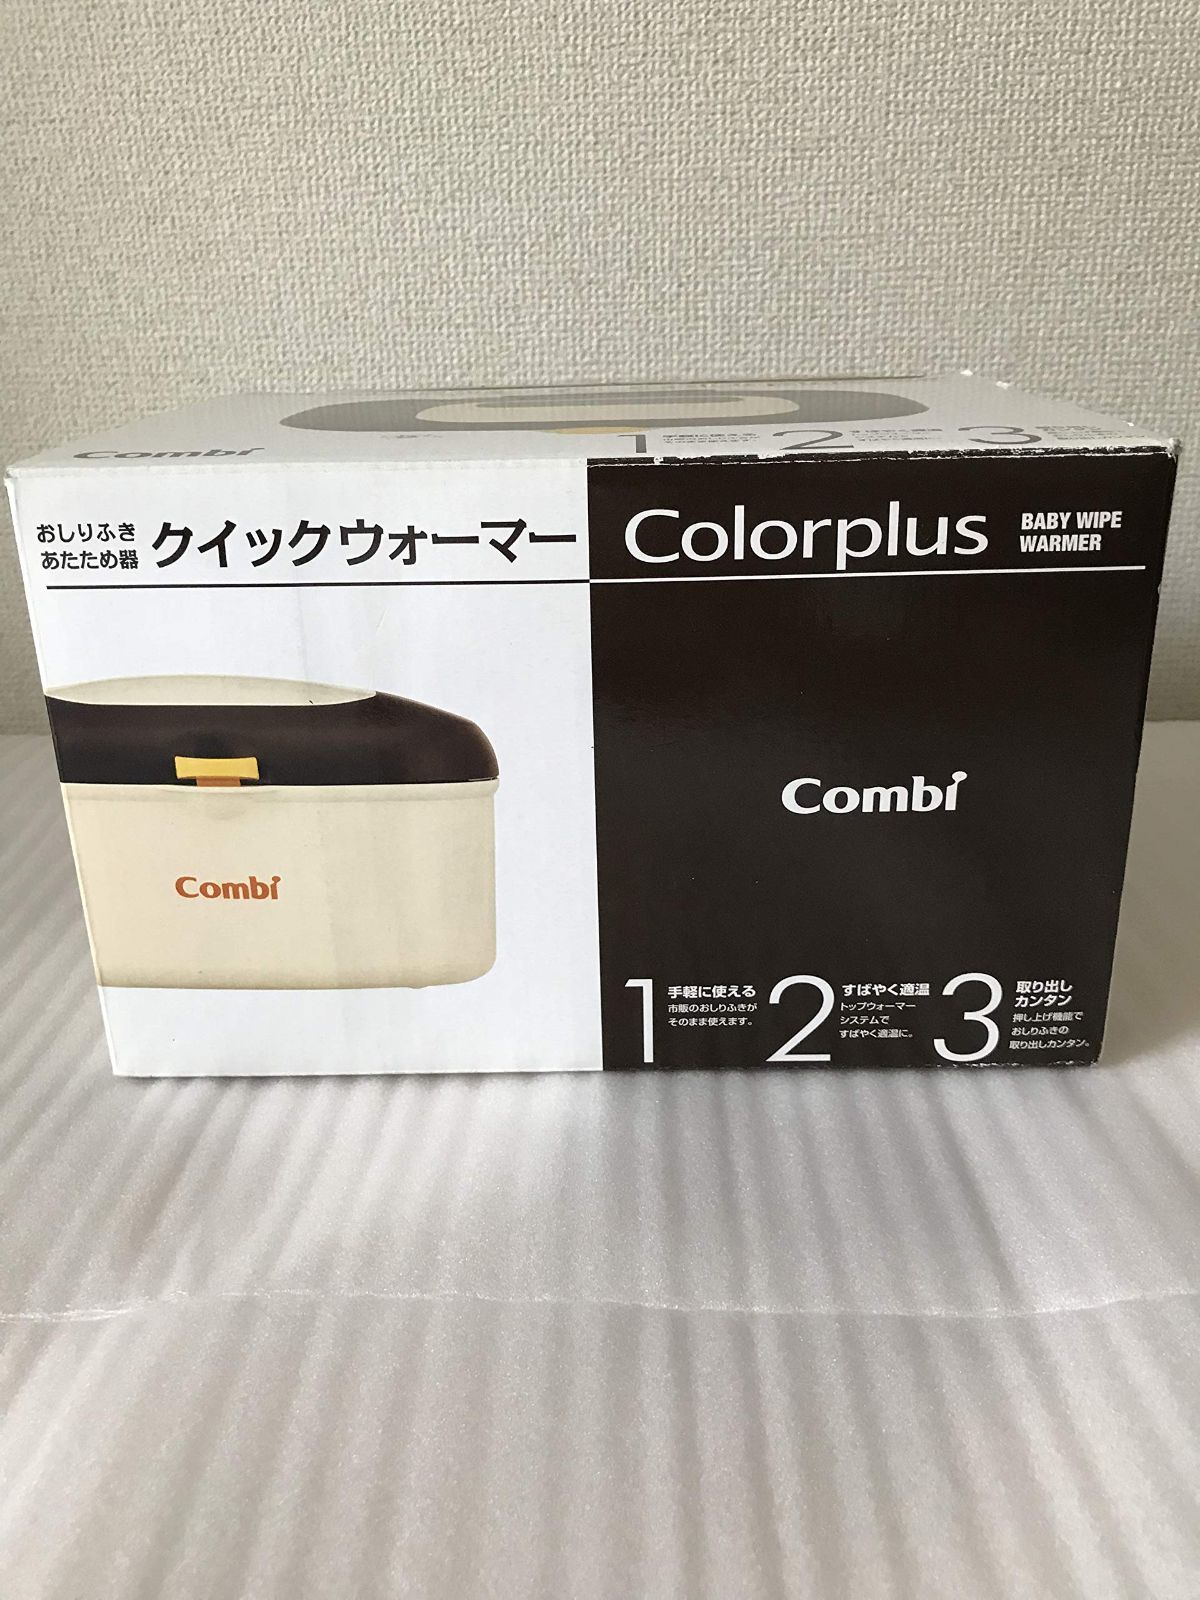 Combi クイックウォーマー Colorplus モダンブラウン - 5